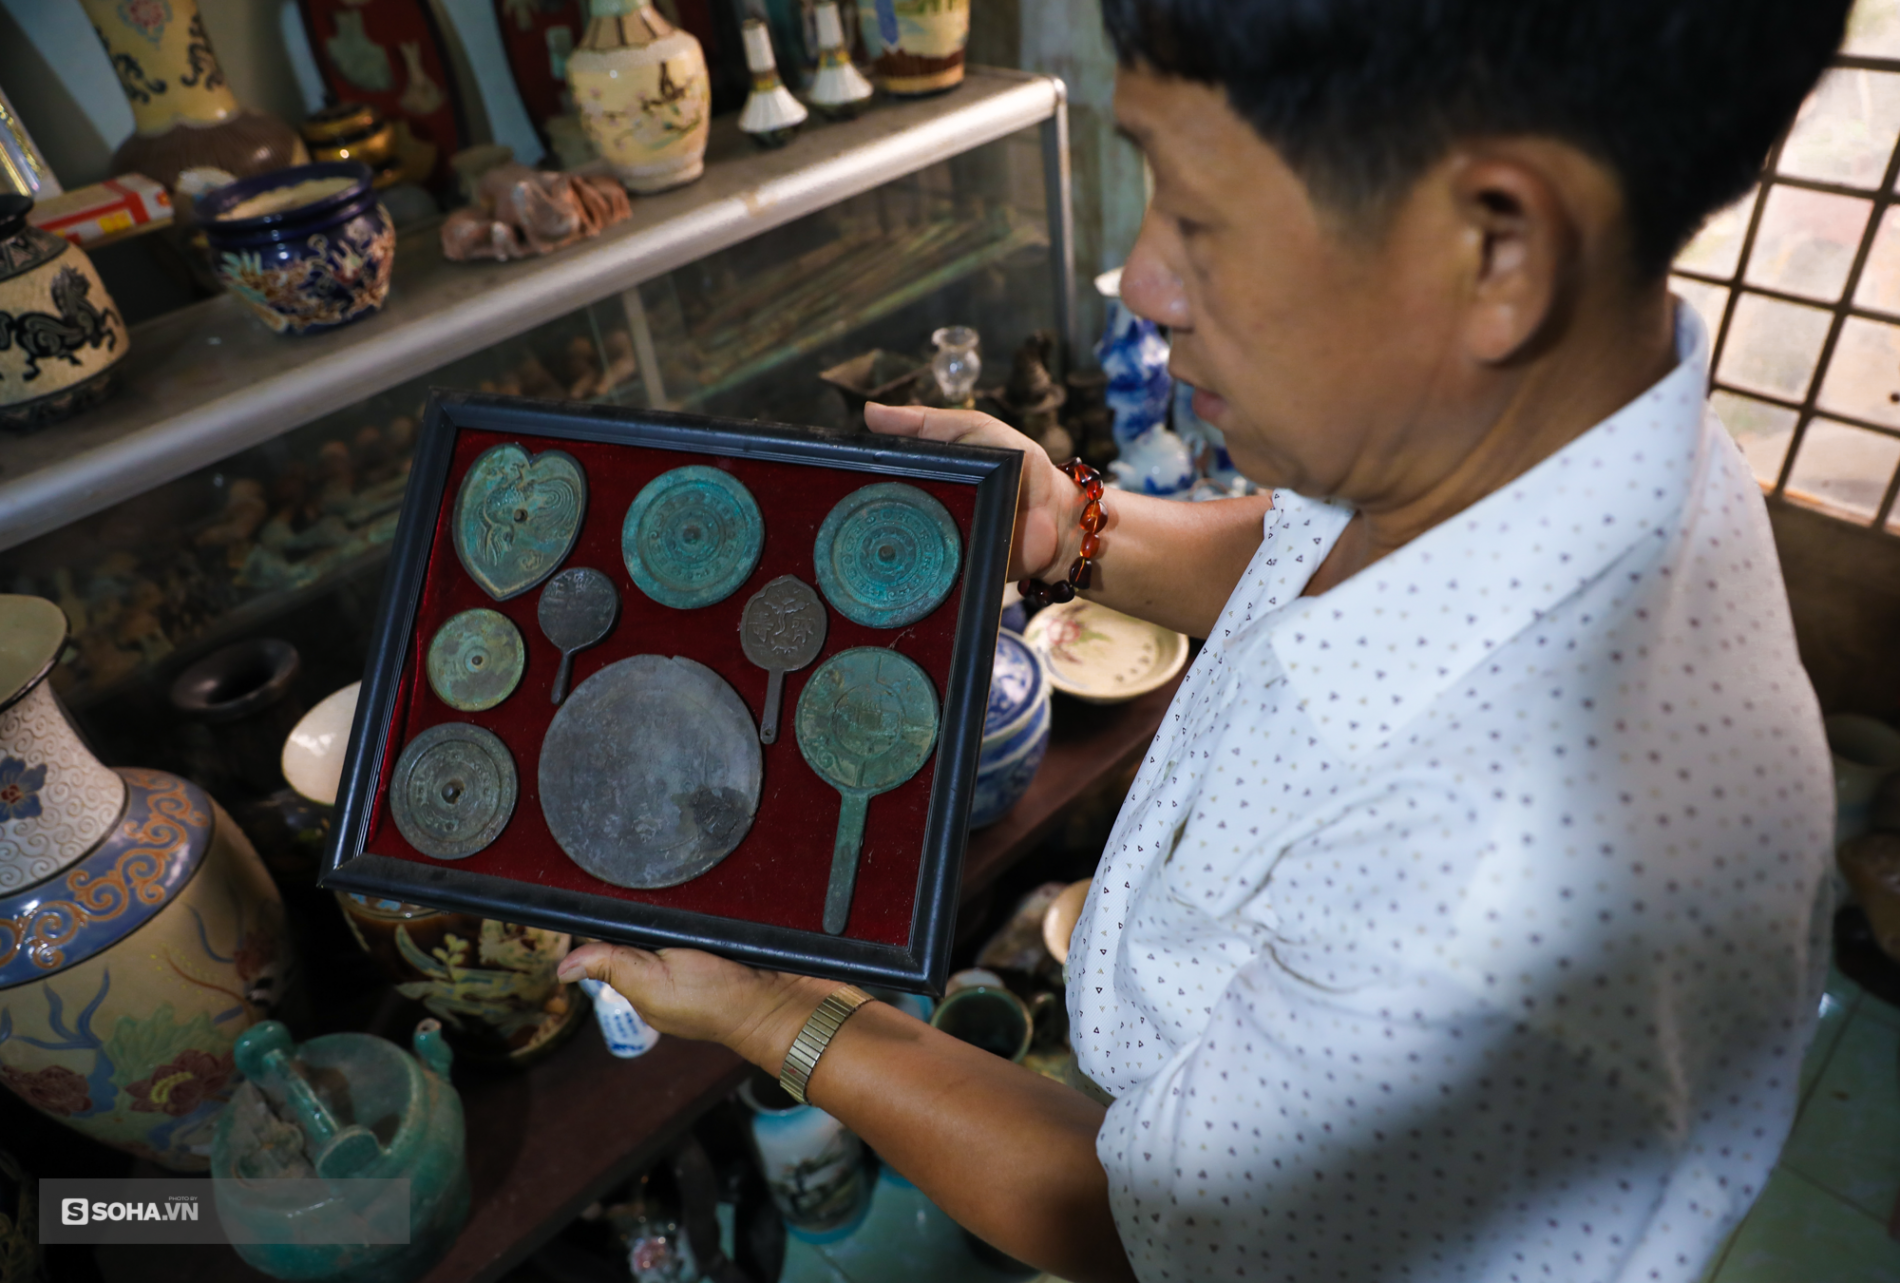 ‘Hoa mắt’ với bộ sưu tập gốm sứ lớn nhất Đông Dương, có món lên tới cả triệu USD - Ảnh 6.